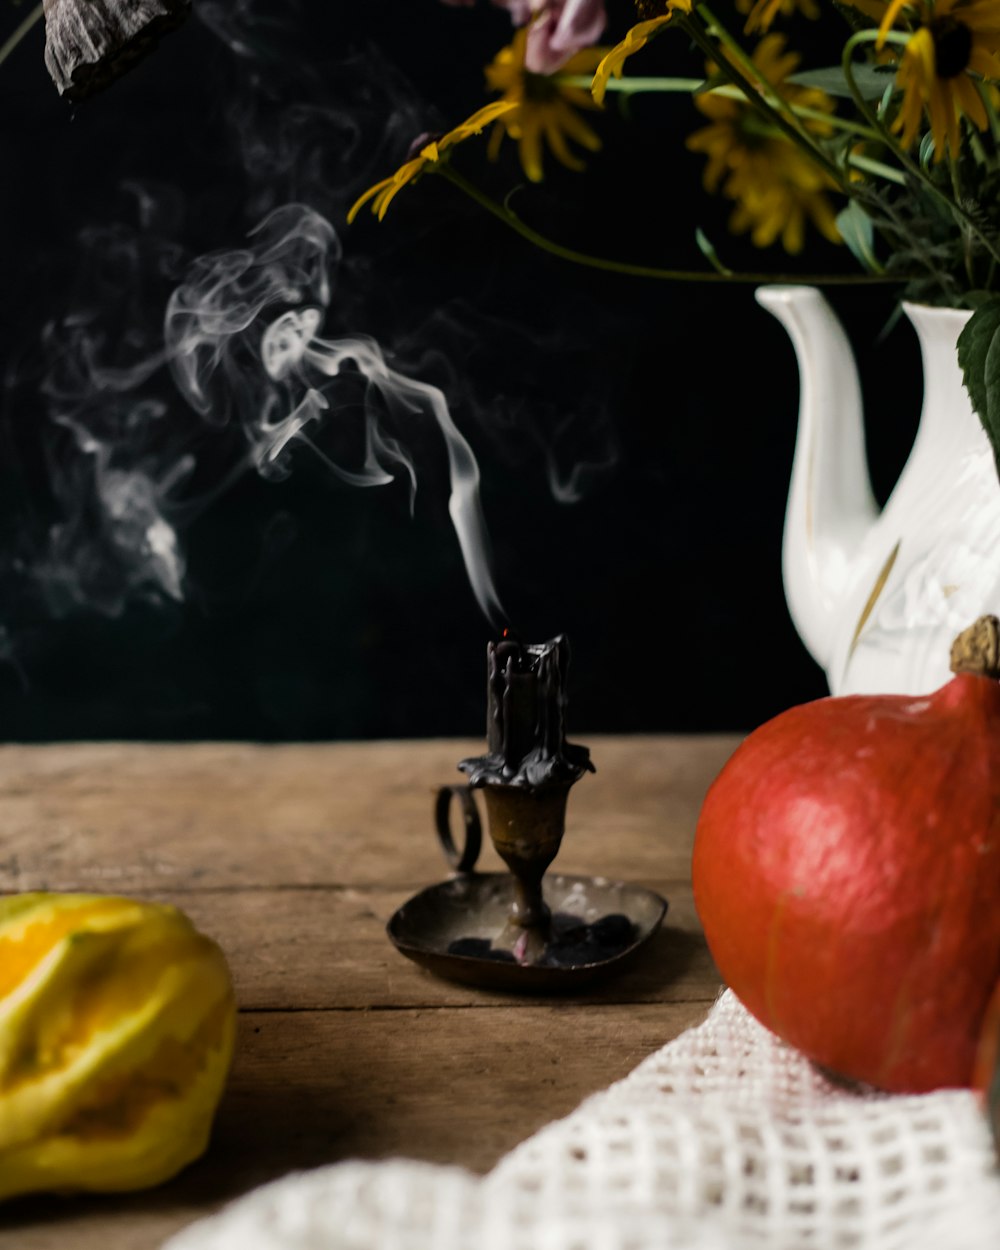 eine Vase gefüllt mit Blumen und Rauch neben einem Apfel